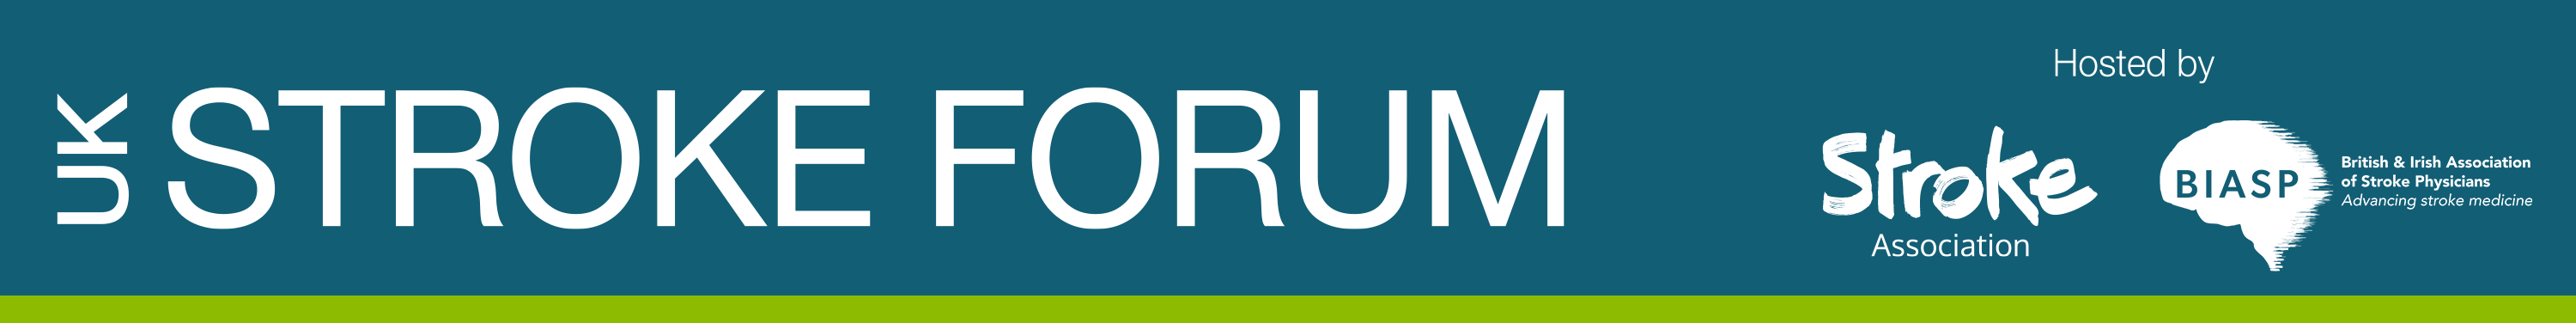 UK Stroke Forum. 29 novembre - 1er décembre 2022.